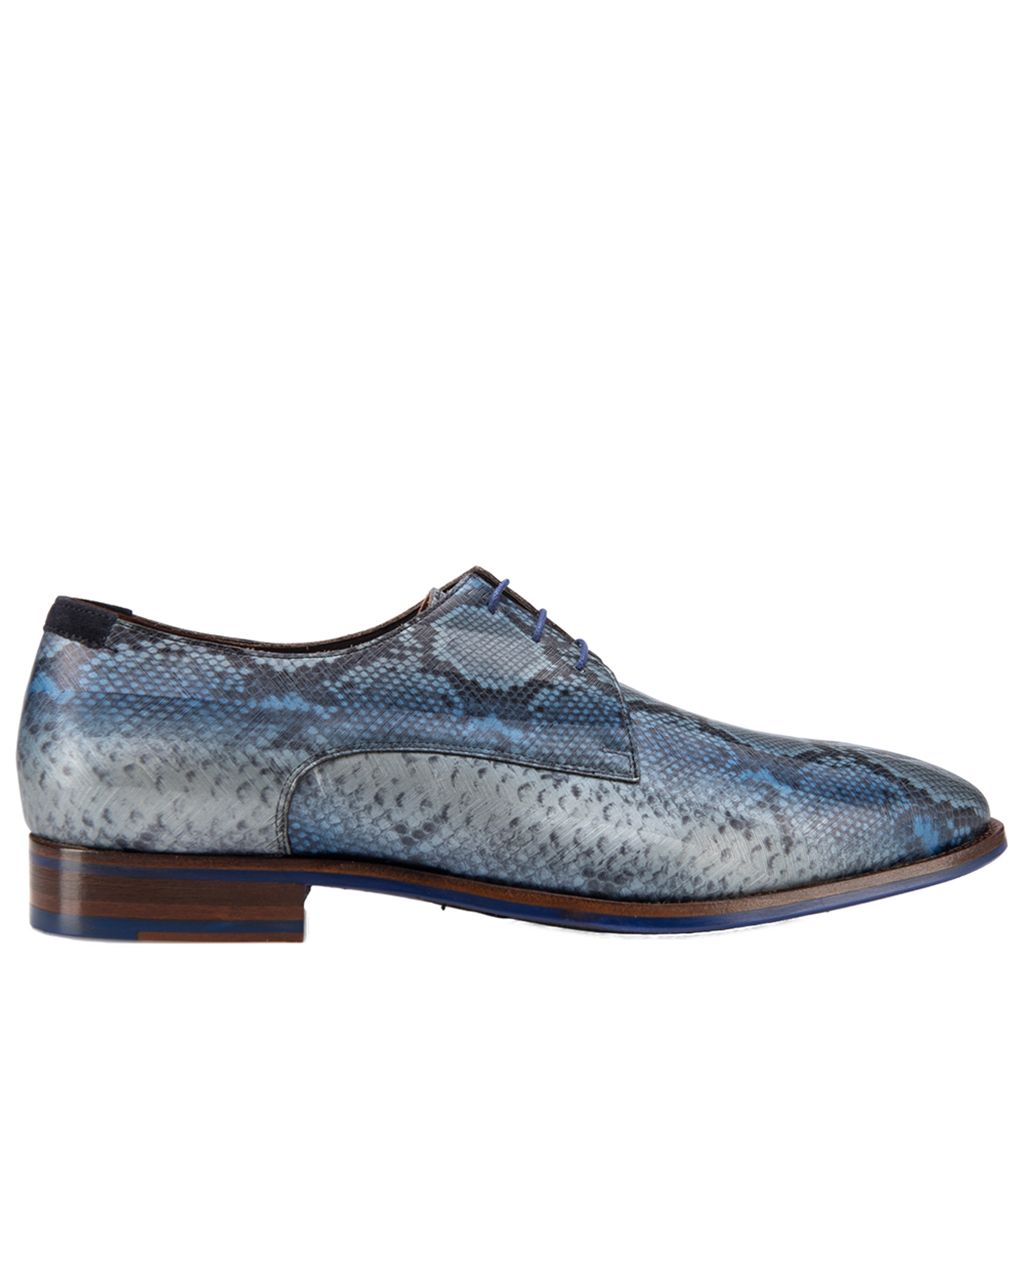 Floris van Bommel Geklede schoenen Blauw 057421-001-10